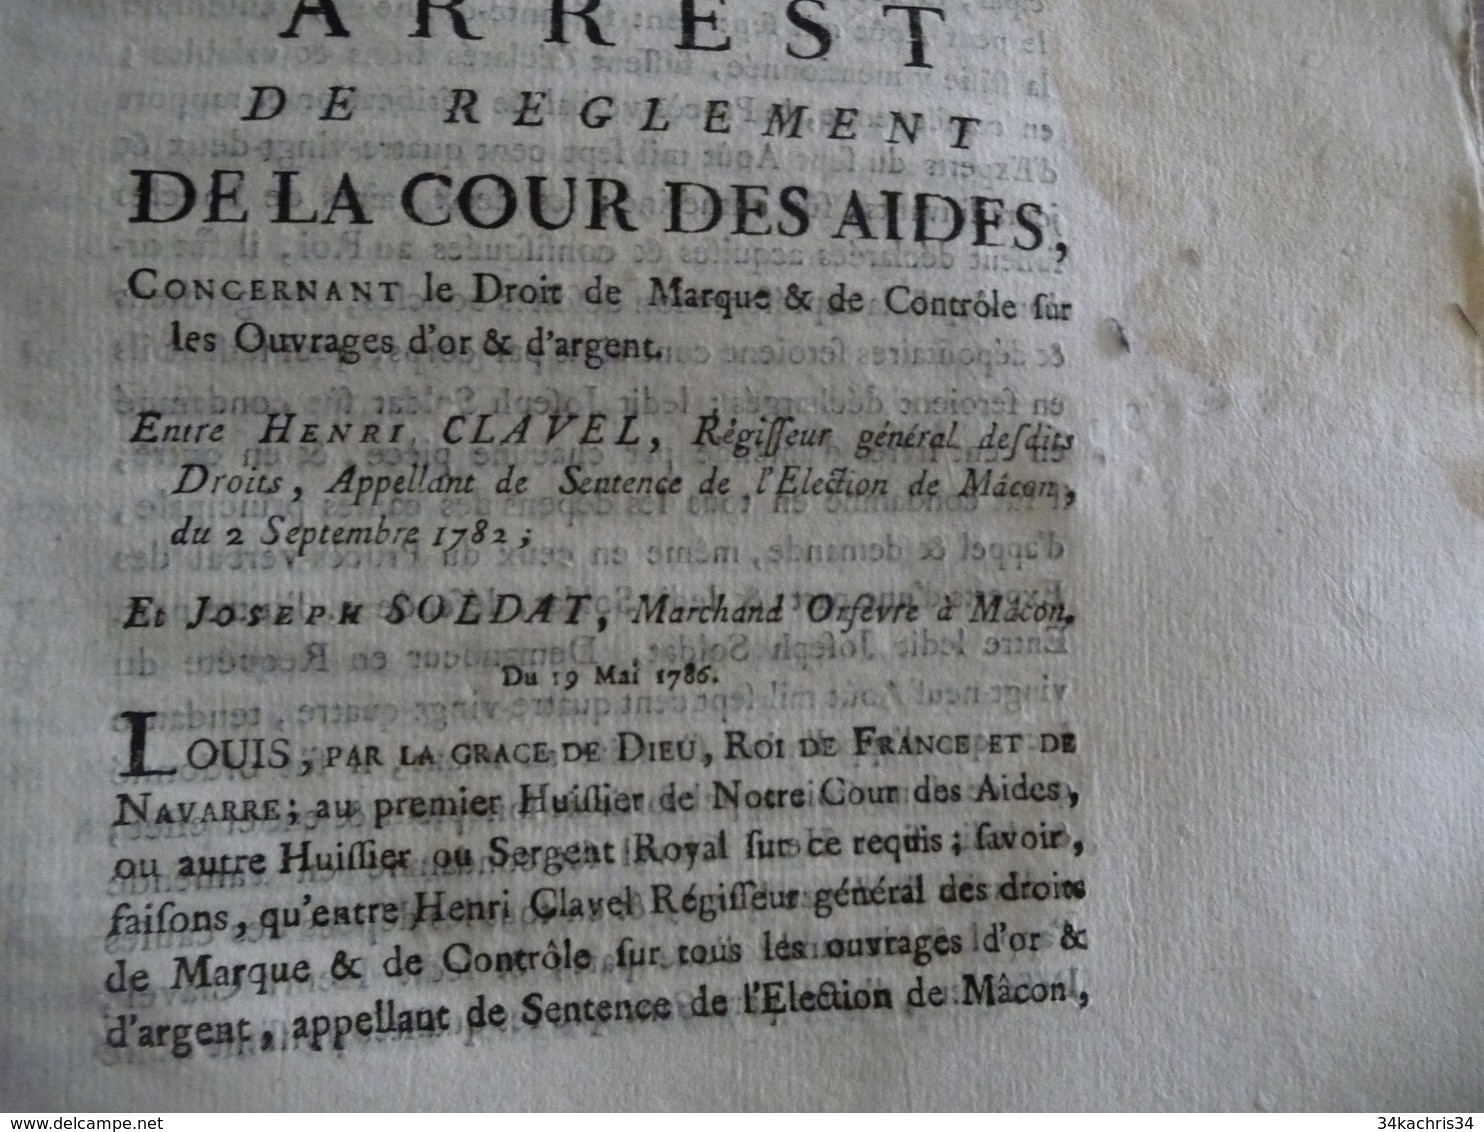 Arrest De Règlement De La Cour Des Aydes Droit De Marque Et Contrôle Ouvrages Or Et Argent 19/05/1782 Mouillures - Gesetze & Erlasse